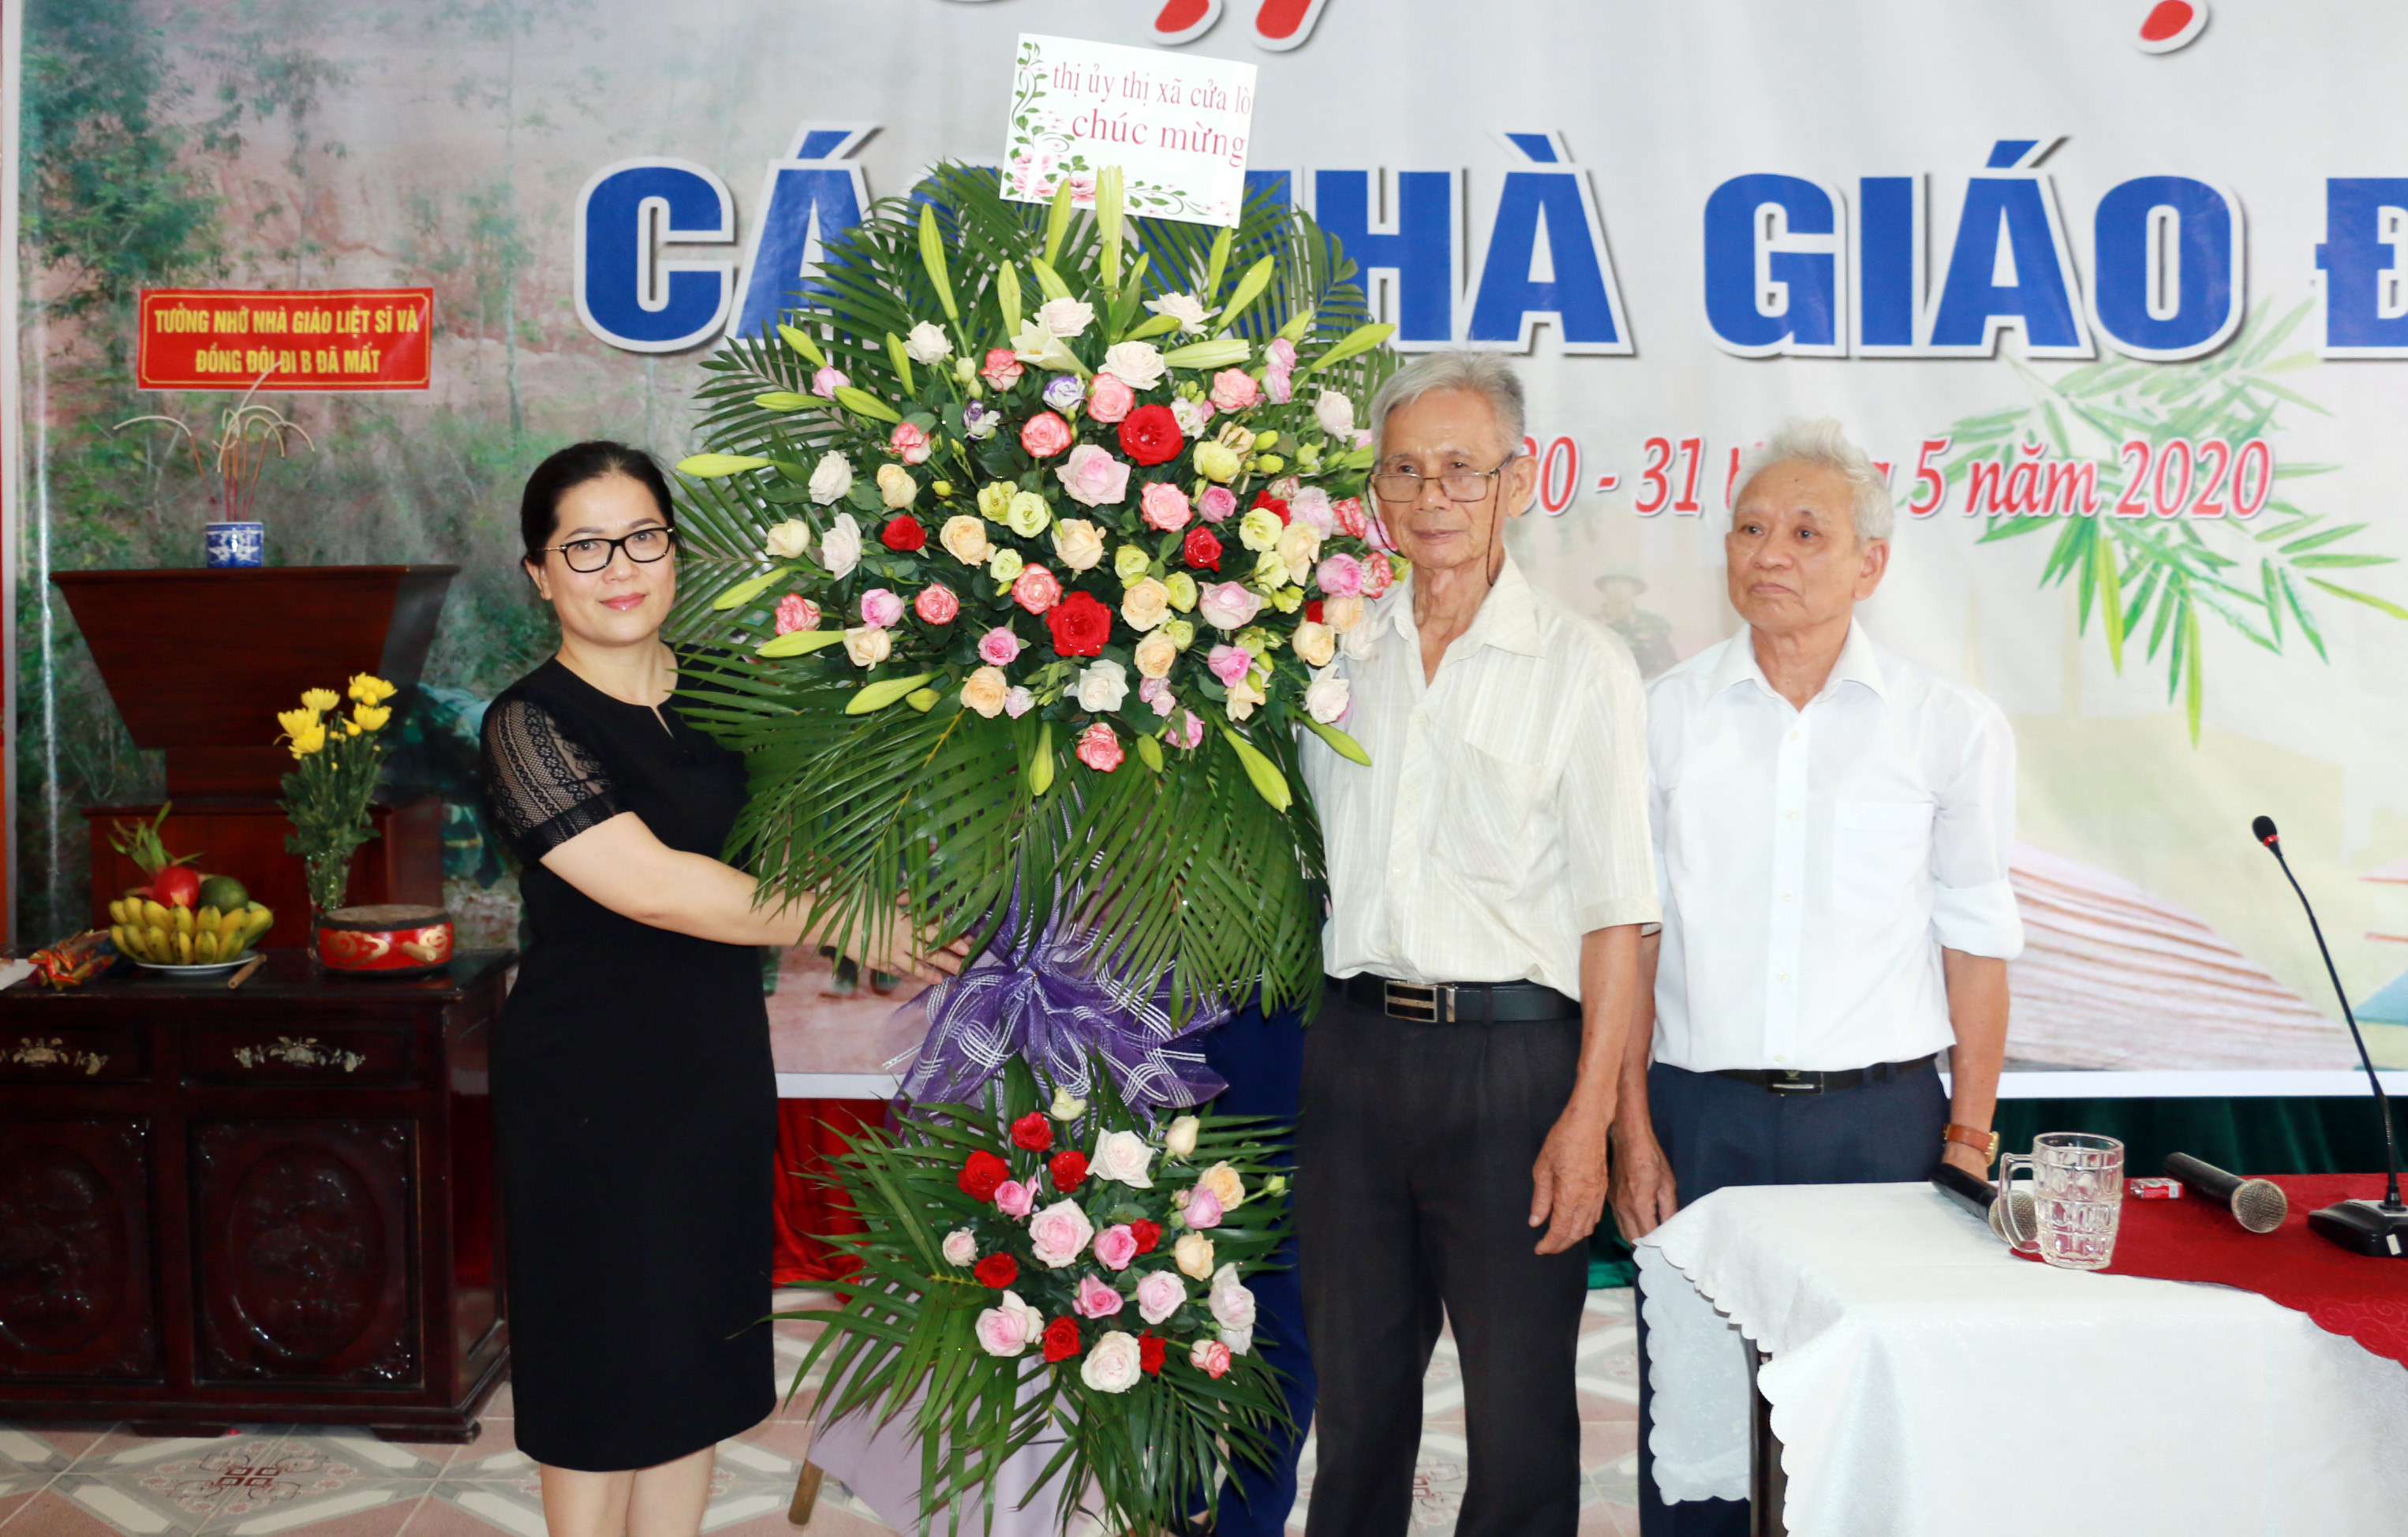 Bí thư Thị xã Cửa Lò Nguyễn Thị Kim Chi tặng hoa cho Ban liên lạc Các nhà giáo đi B. Ảnh: Mỹ Hà